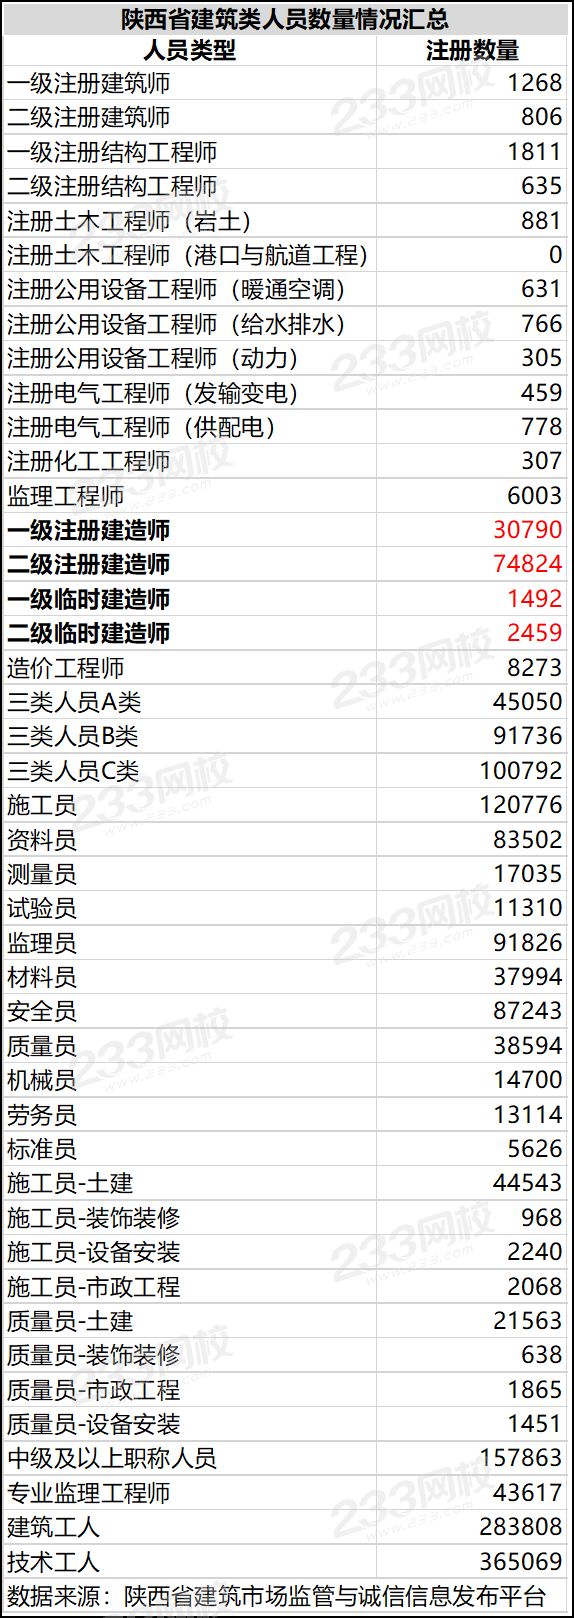 陕西建筑类人员数量一览表.png